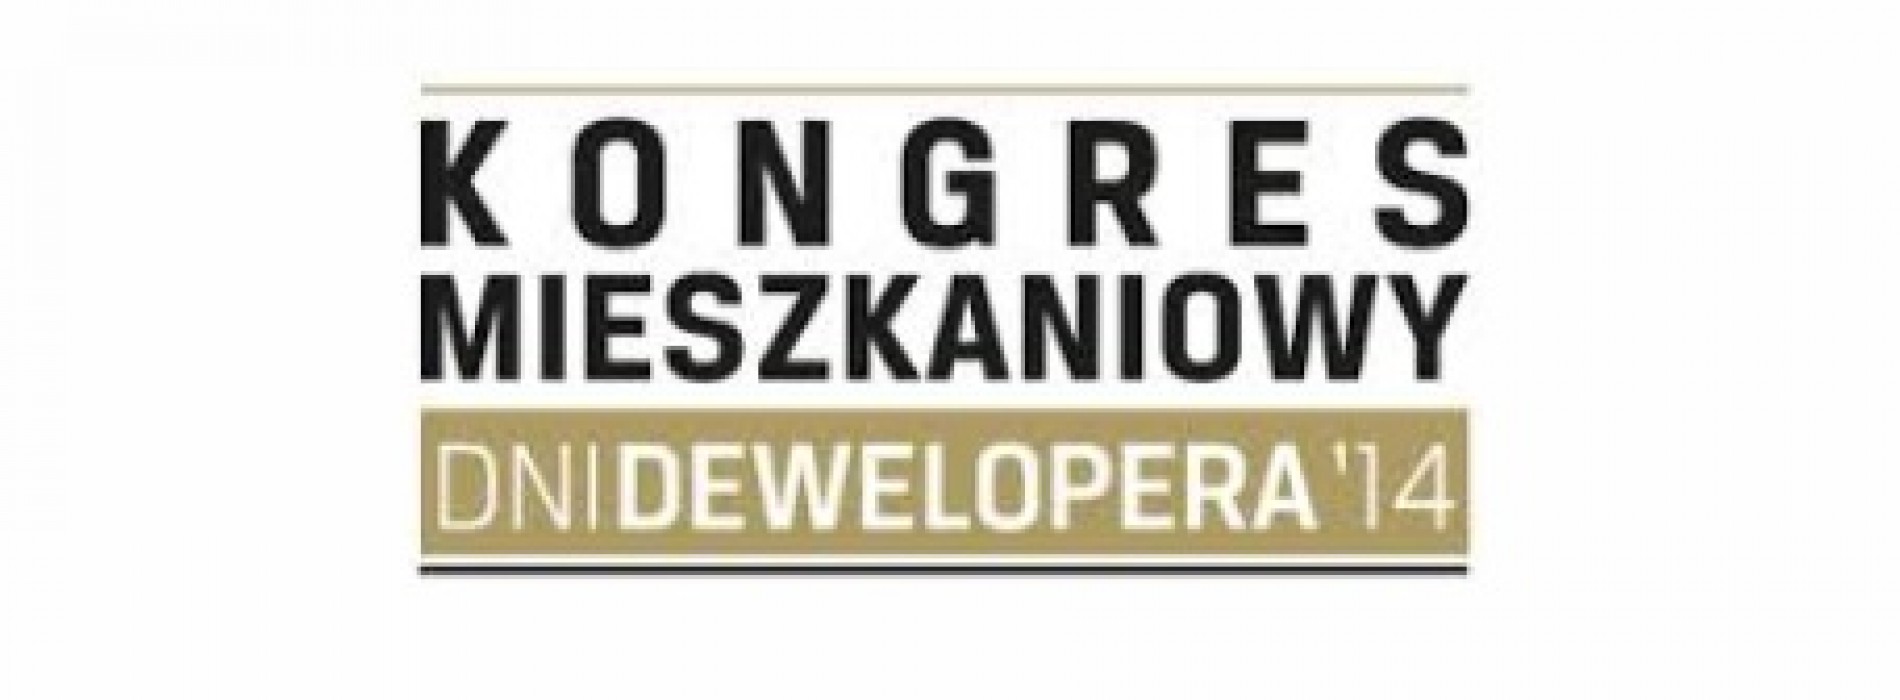 Kongres mieszkaniowy „Dni dewelopera” wypracował rekomdenacje dot. rozwoju polskich miast